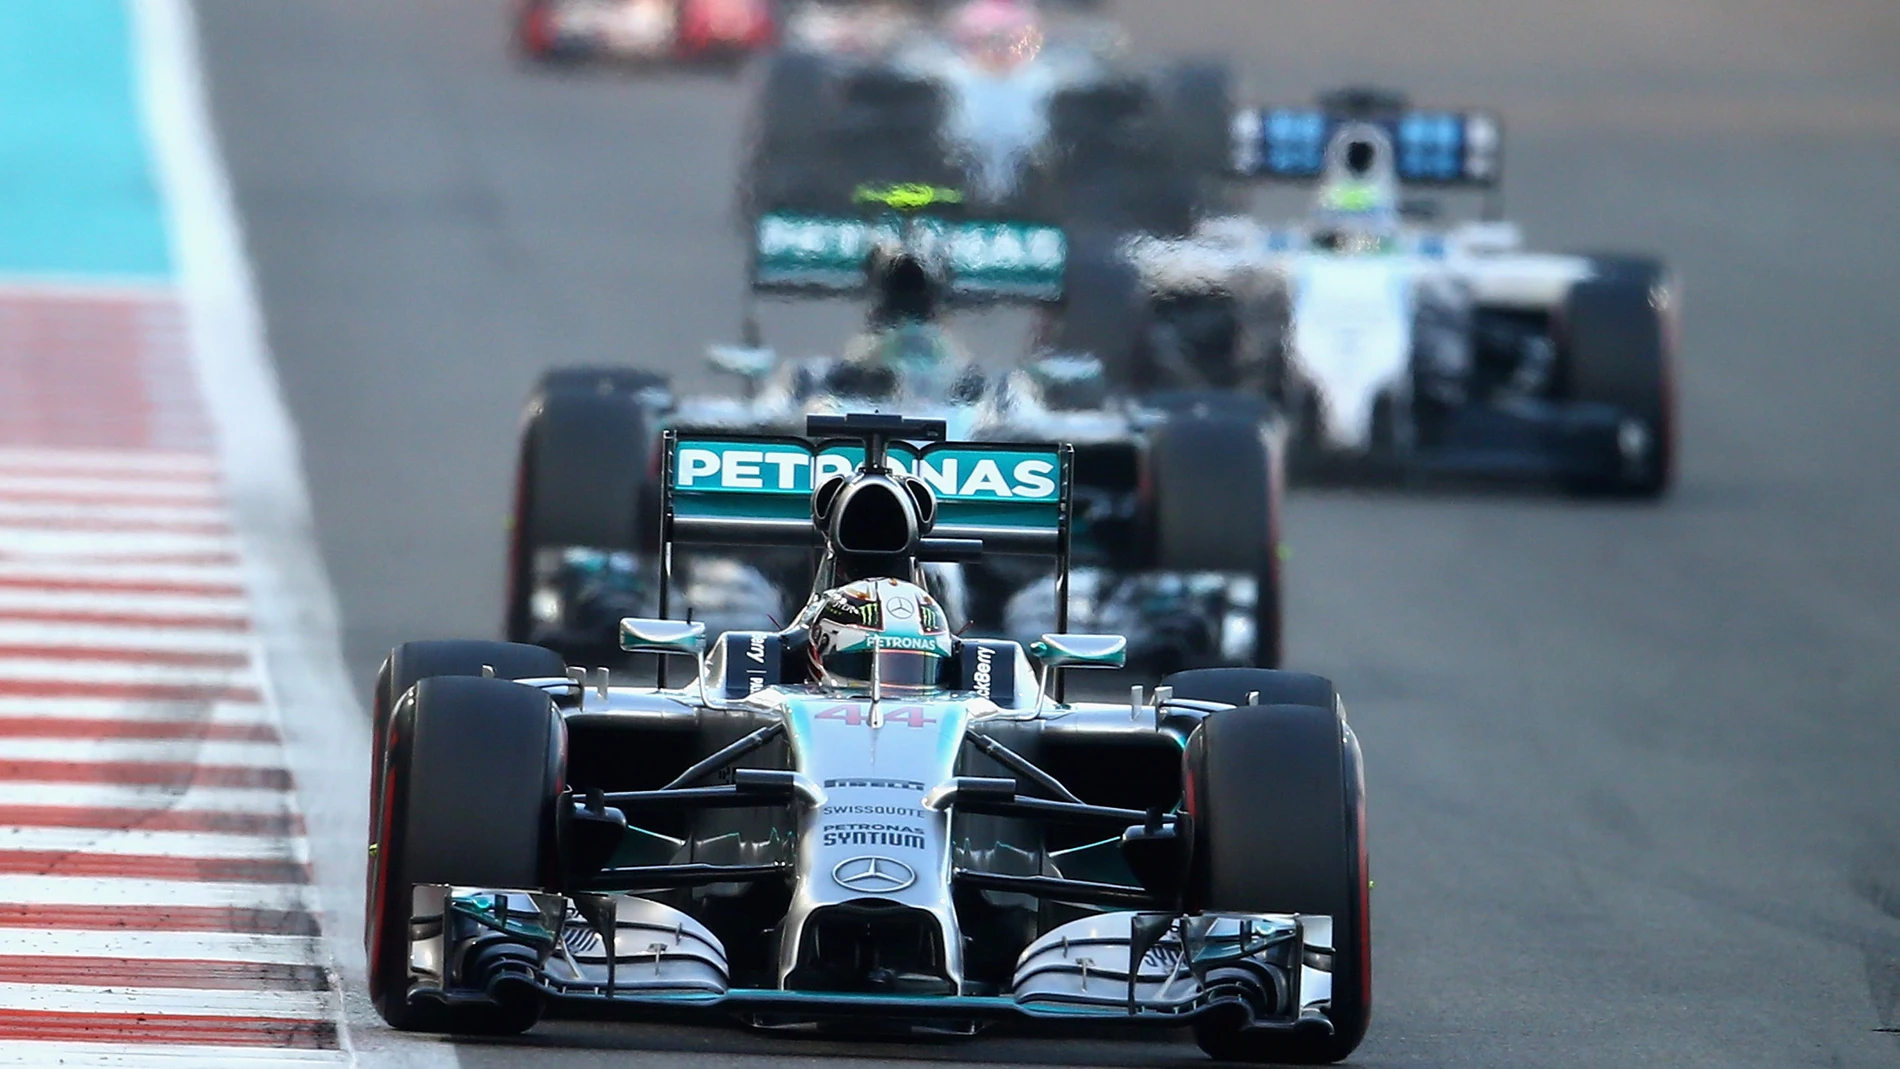 Lewis venció a Rosberg en la salida